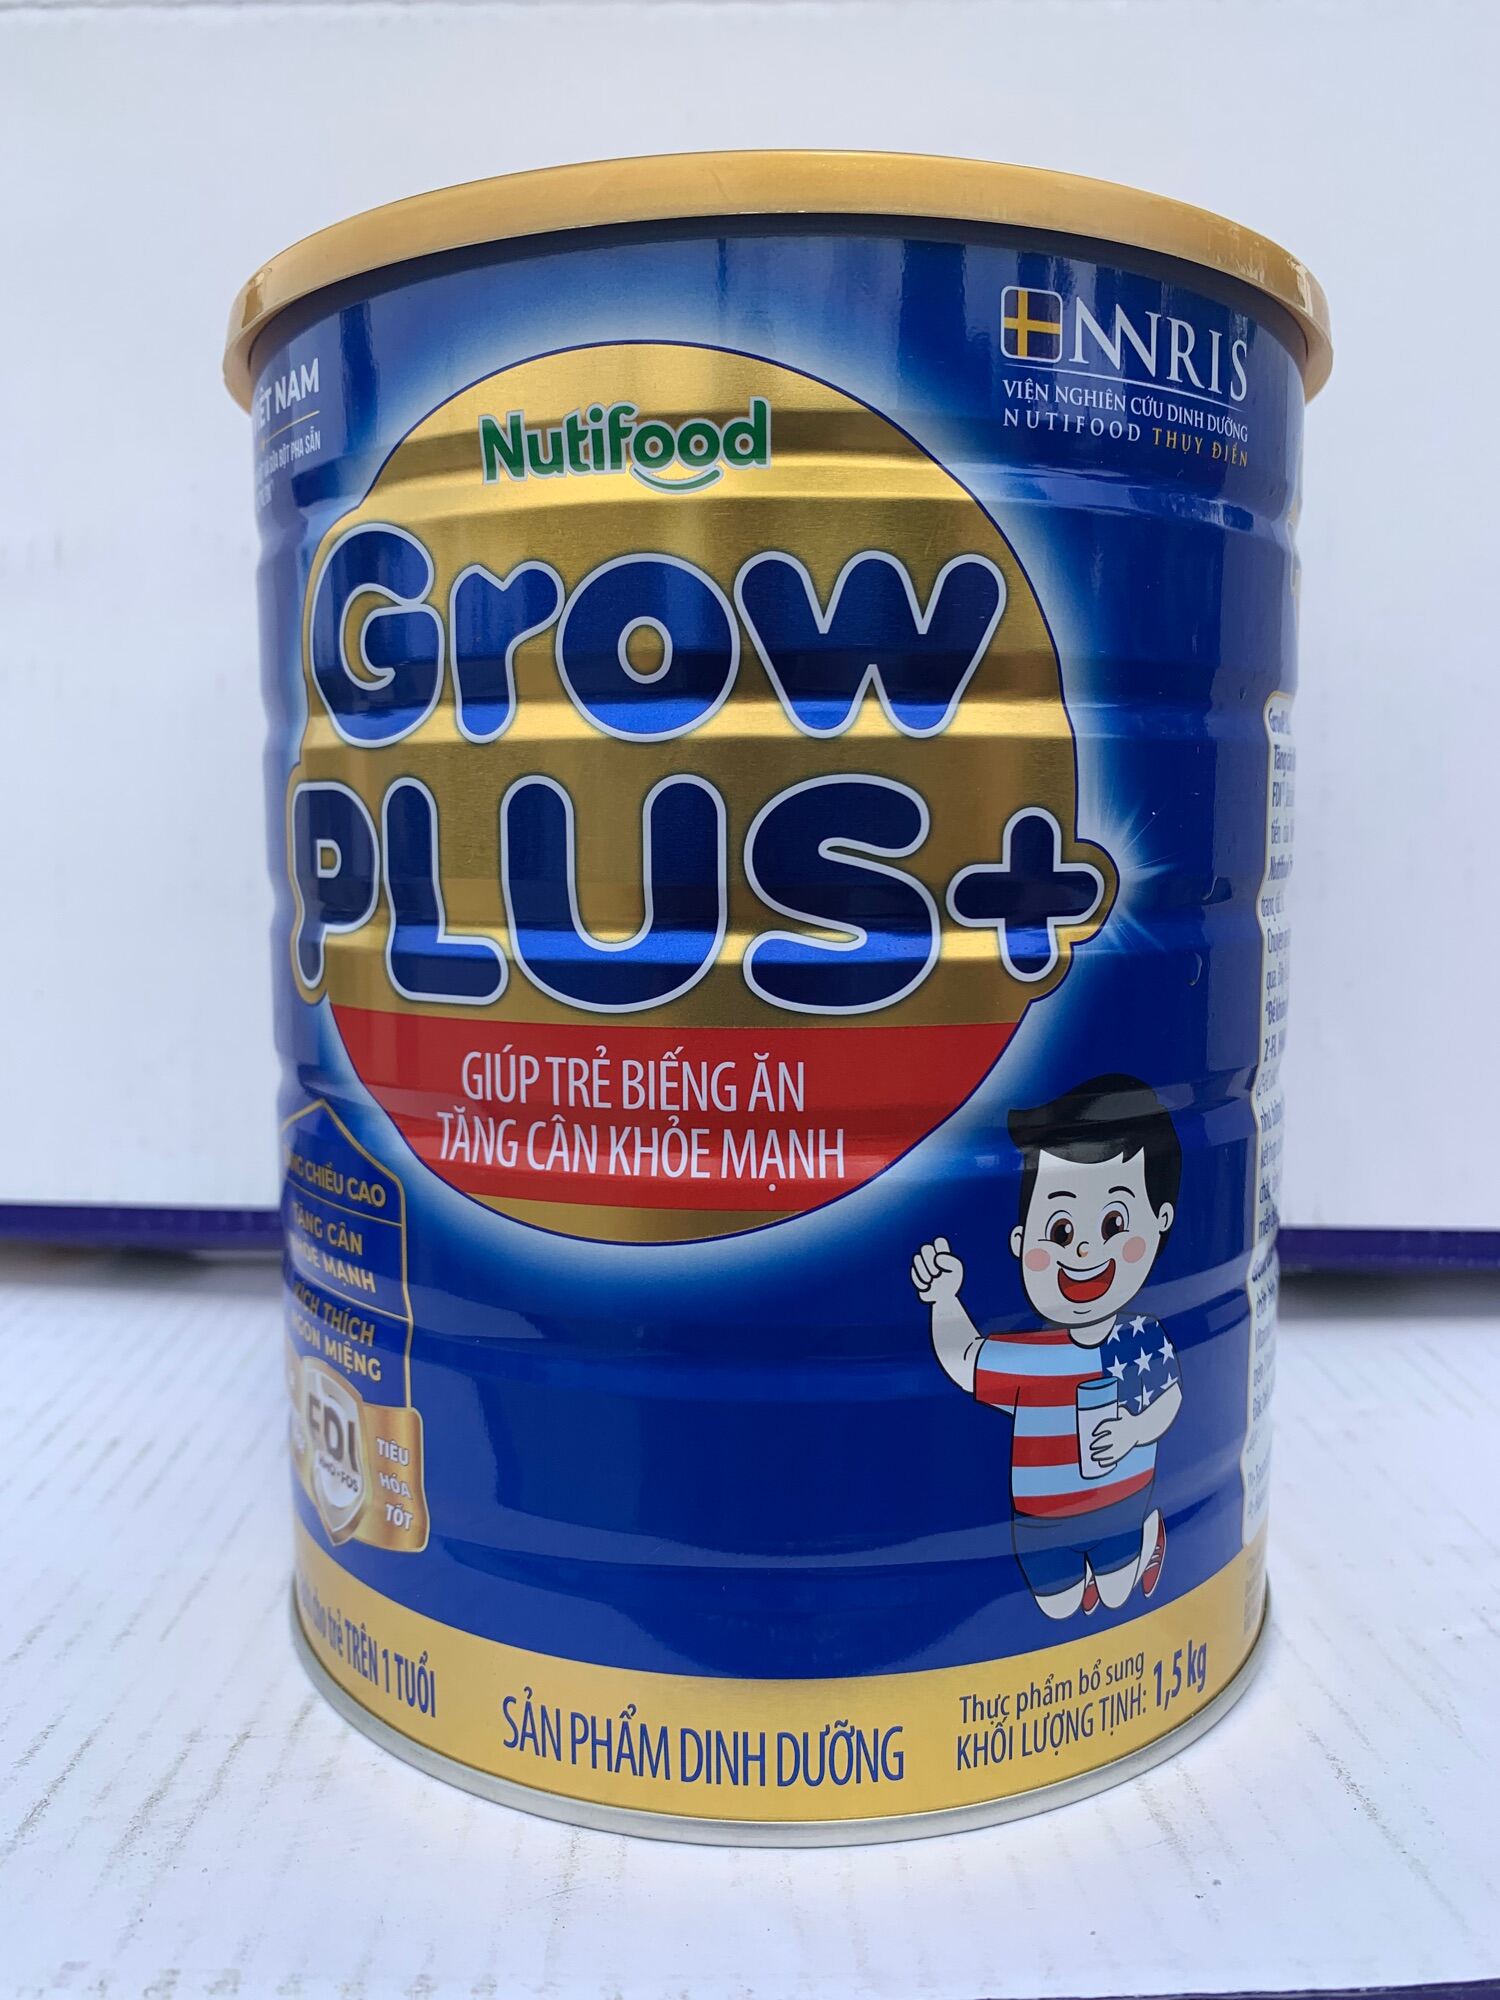 HCMSữa Bột Nutifood Growplus Xanh 1.5kg Date Mới Nhất - grow xanh 1.5kg